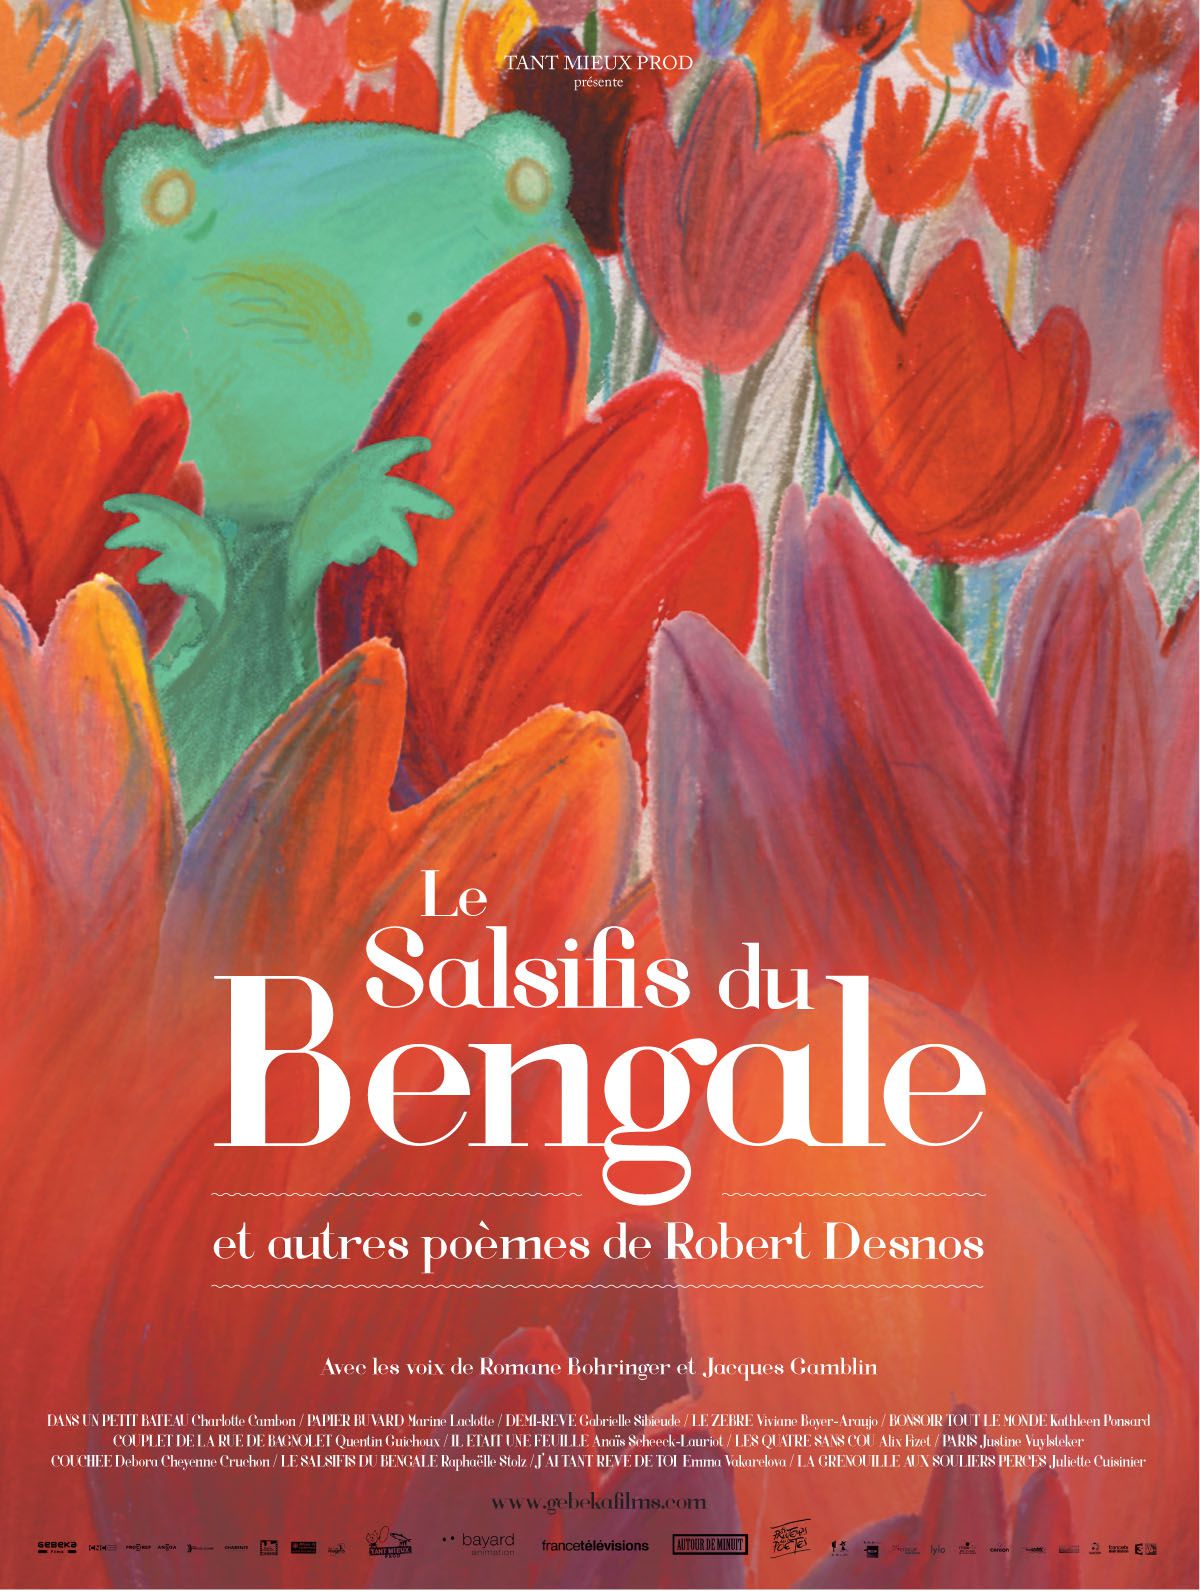 Le Salsifis du Bengale et autres poèmes de Robert Desnos - Long-métrage d'animation (2015)